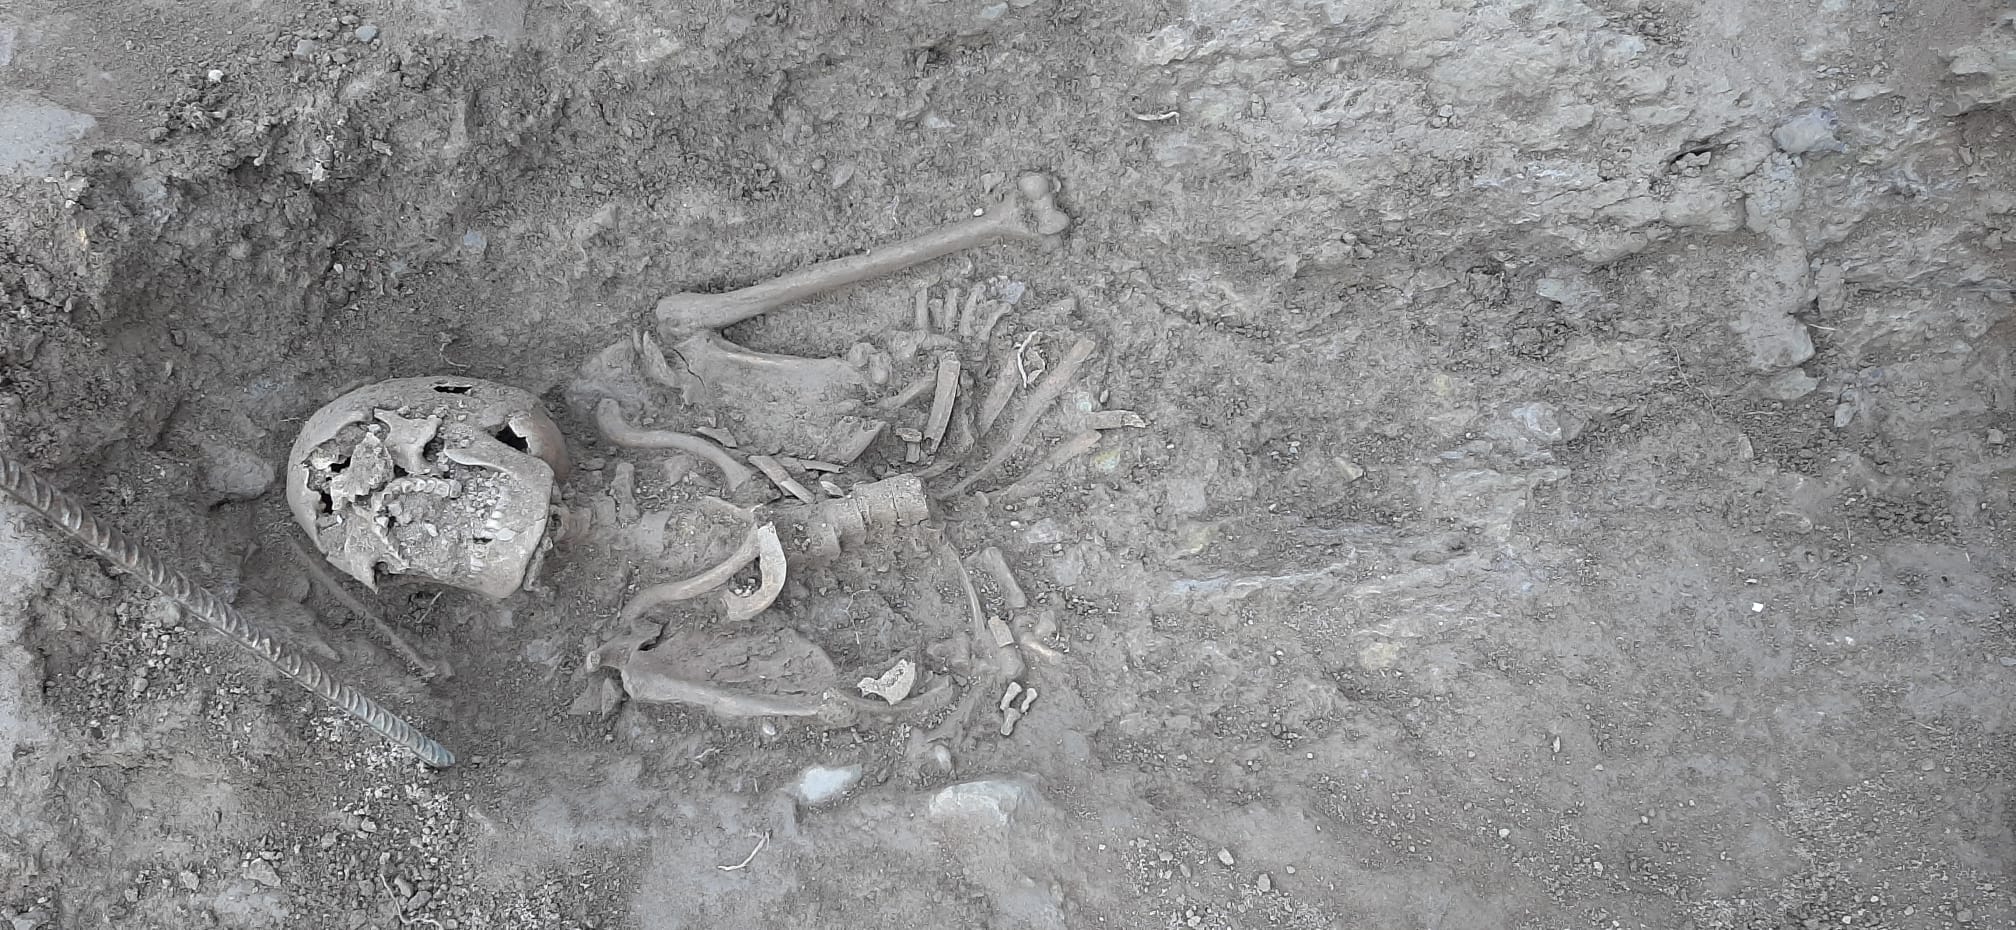 Un dels esquelets trobats